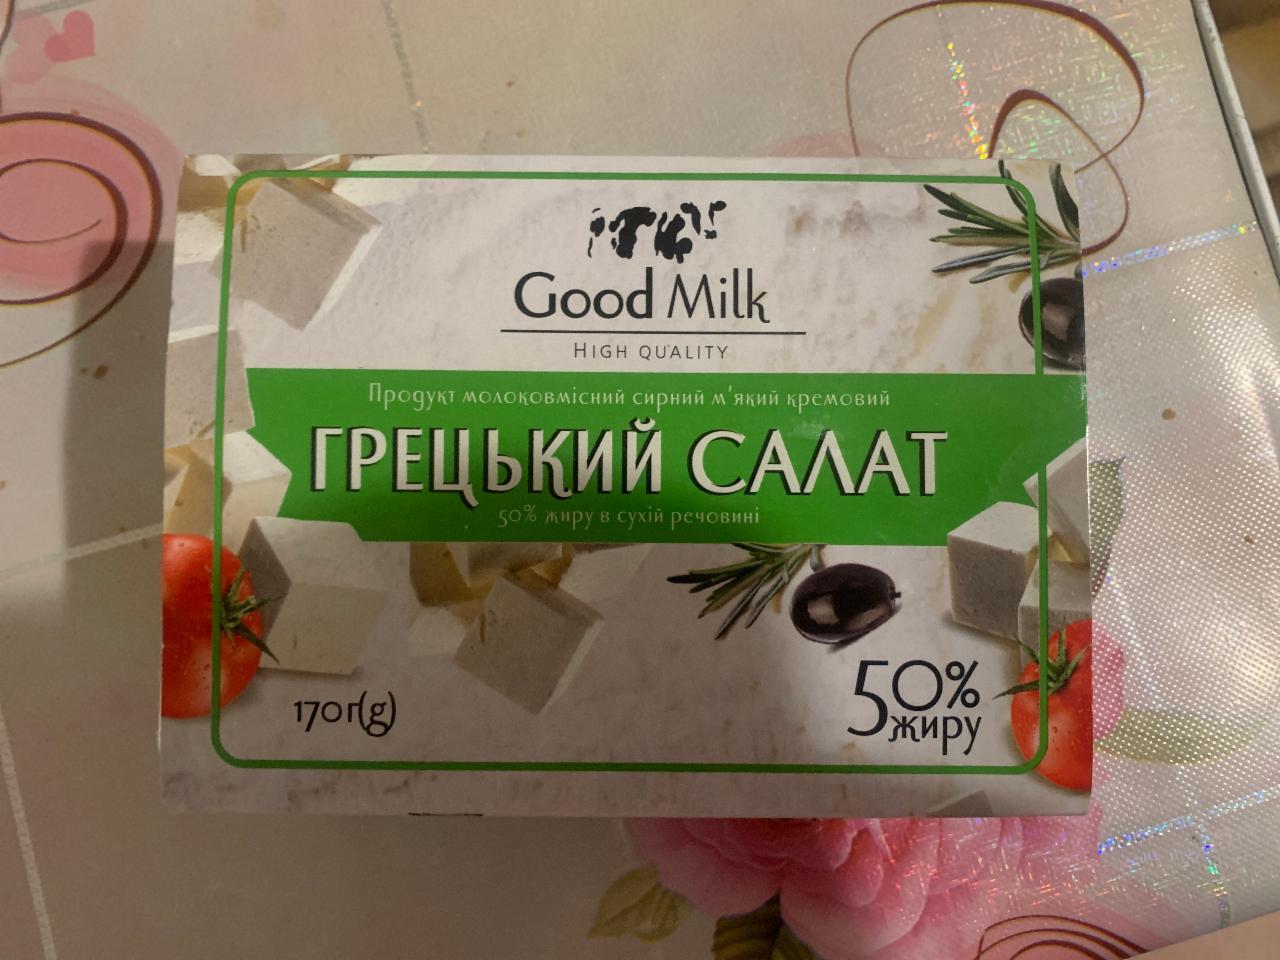 Фото - Продукт молоковмісний 50% сирний м‘який кремовий Грецький салат Good Milk